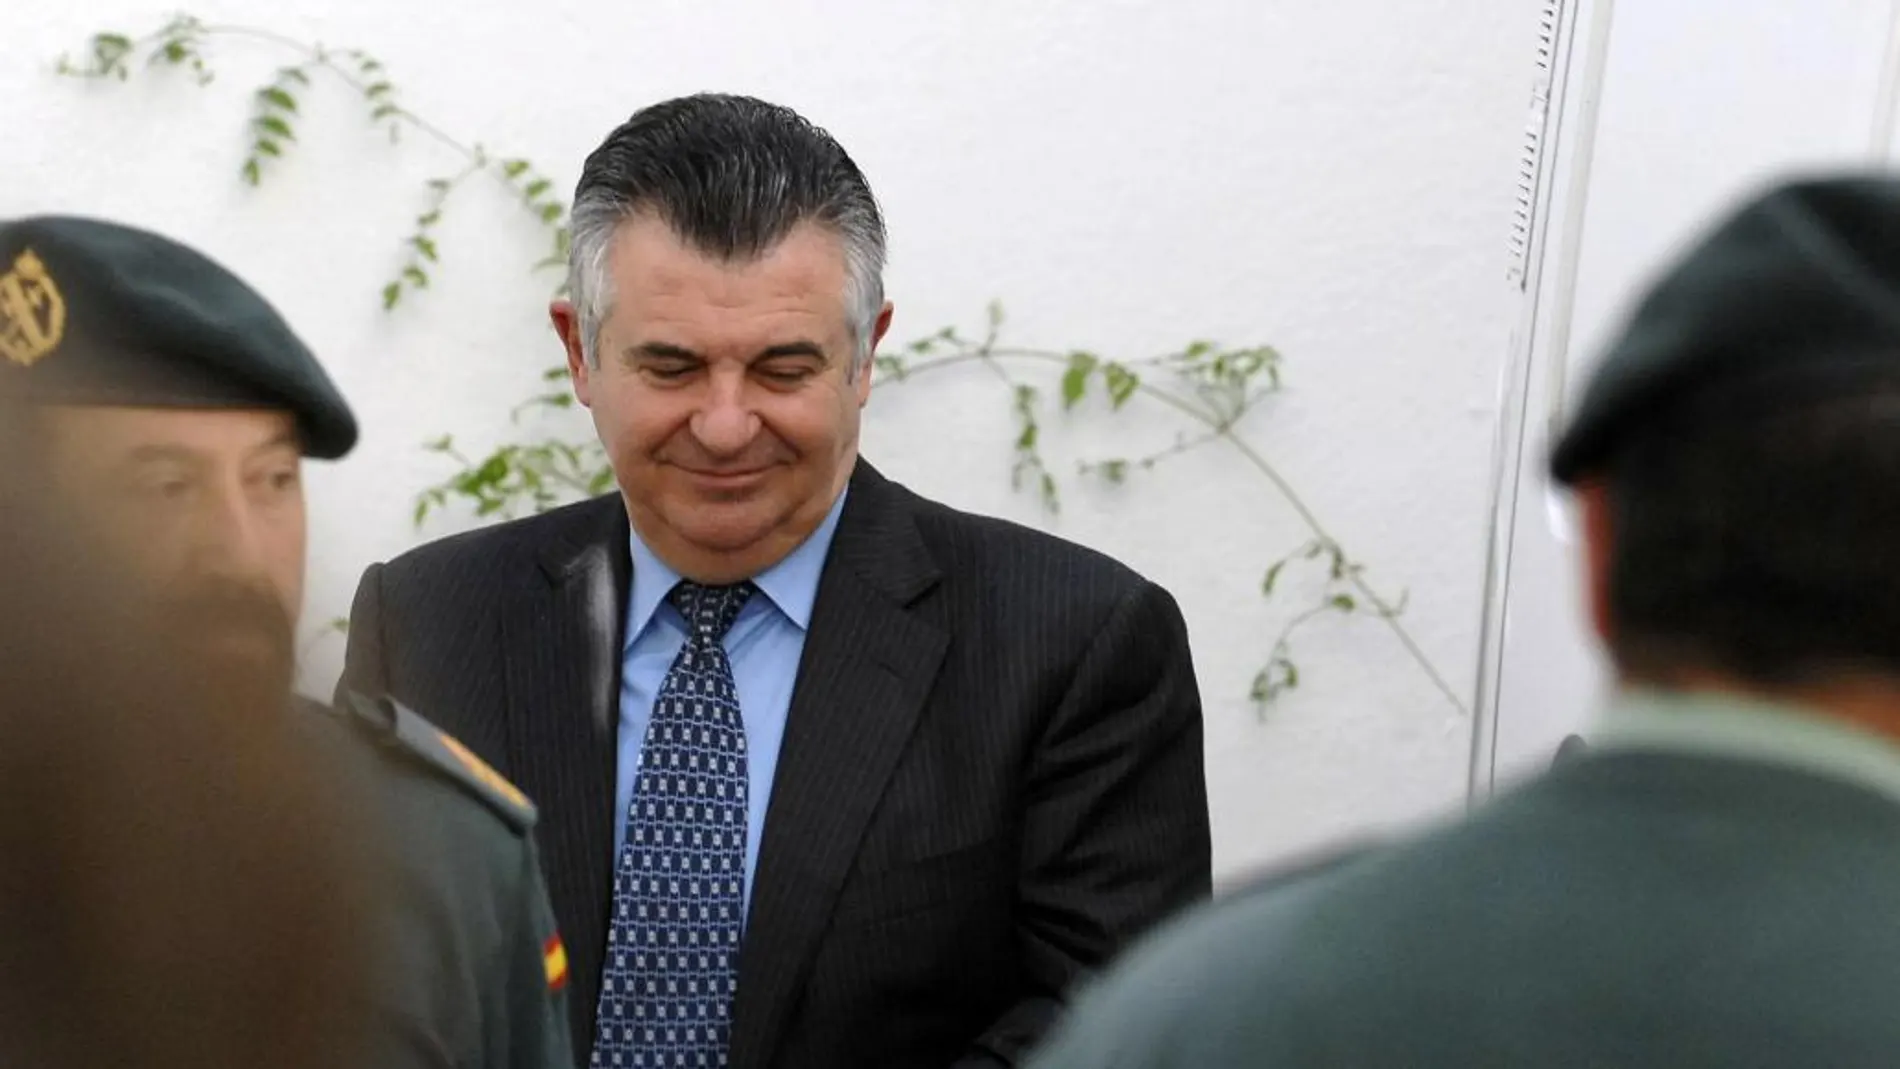 El ex gerente de urbanismo del ayuntamiento de Marbella Juan Antonio Roca, a su salida de los juzgados de la localidad malagueña de Marbella